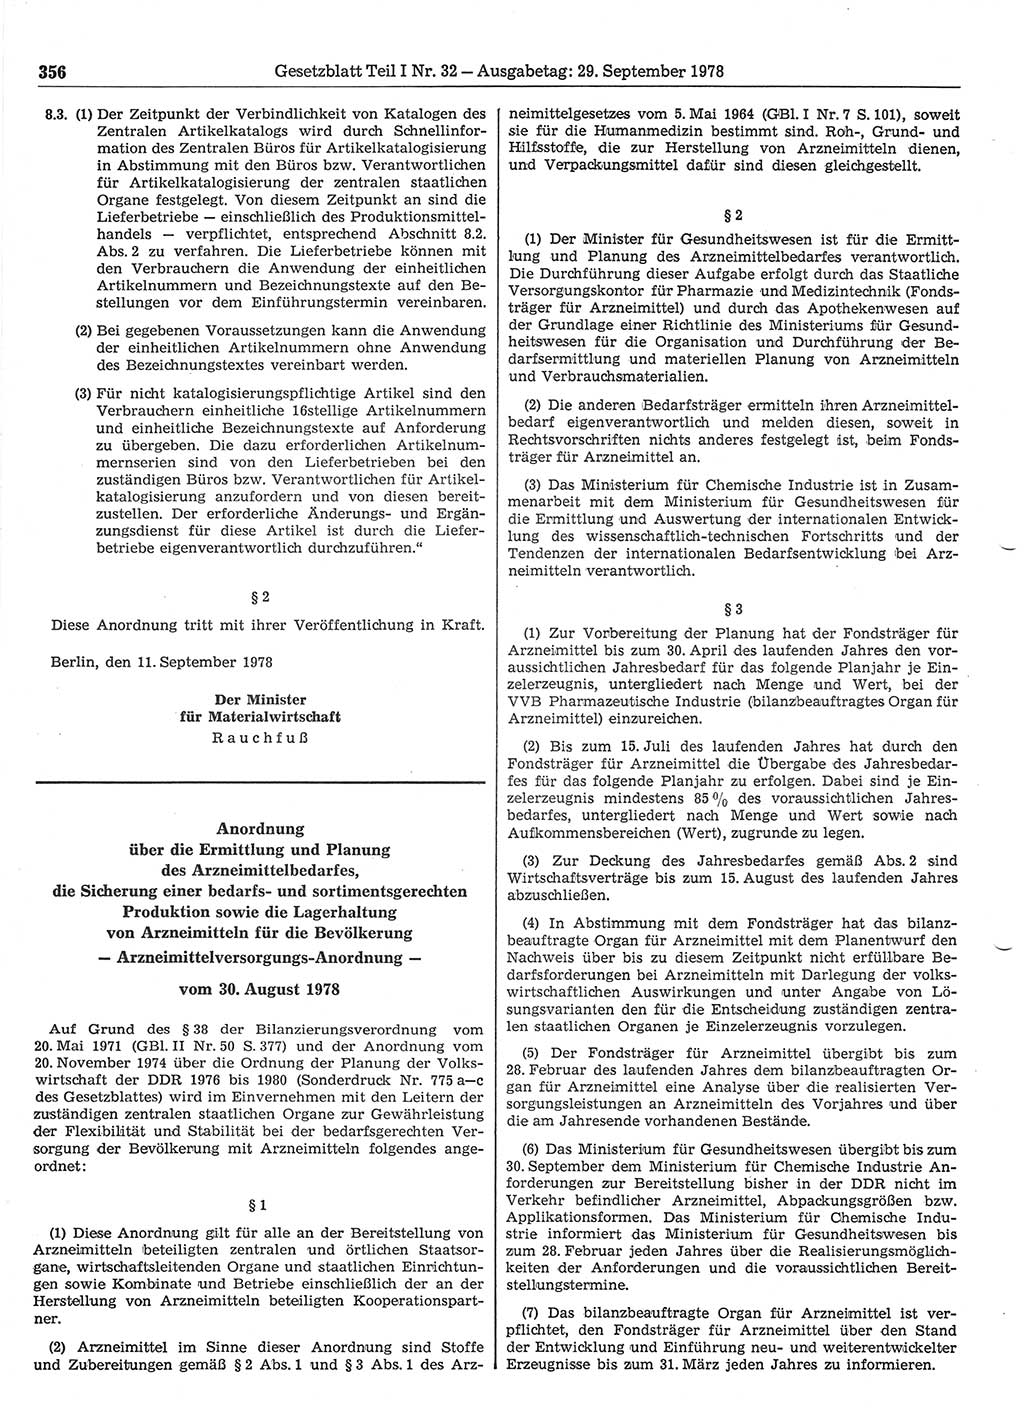 Gesetzblatt (GBl.) der Deutschen Demokratischen Republik (DDR) Teil Ⅰ 1978, Seite 356 (GBl. DDR Ⅰ 1978, S. 356)